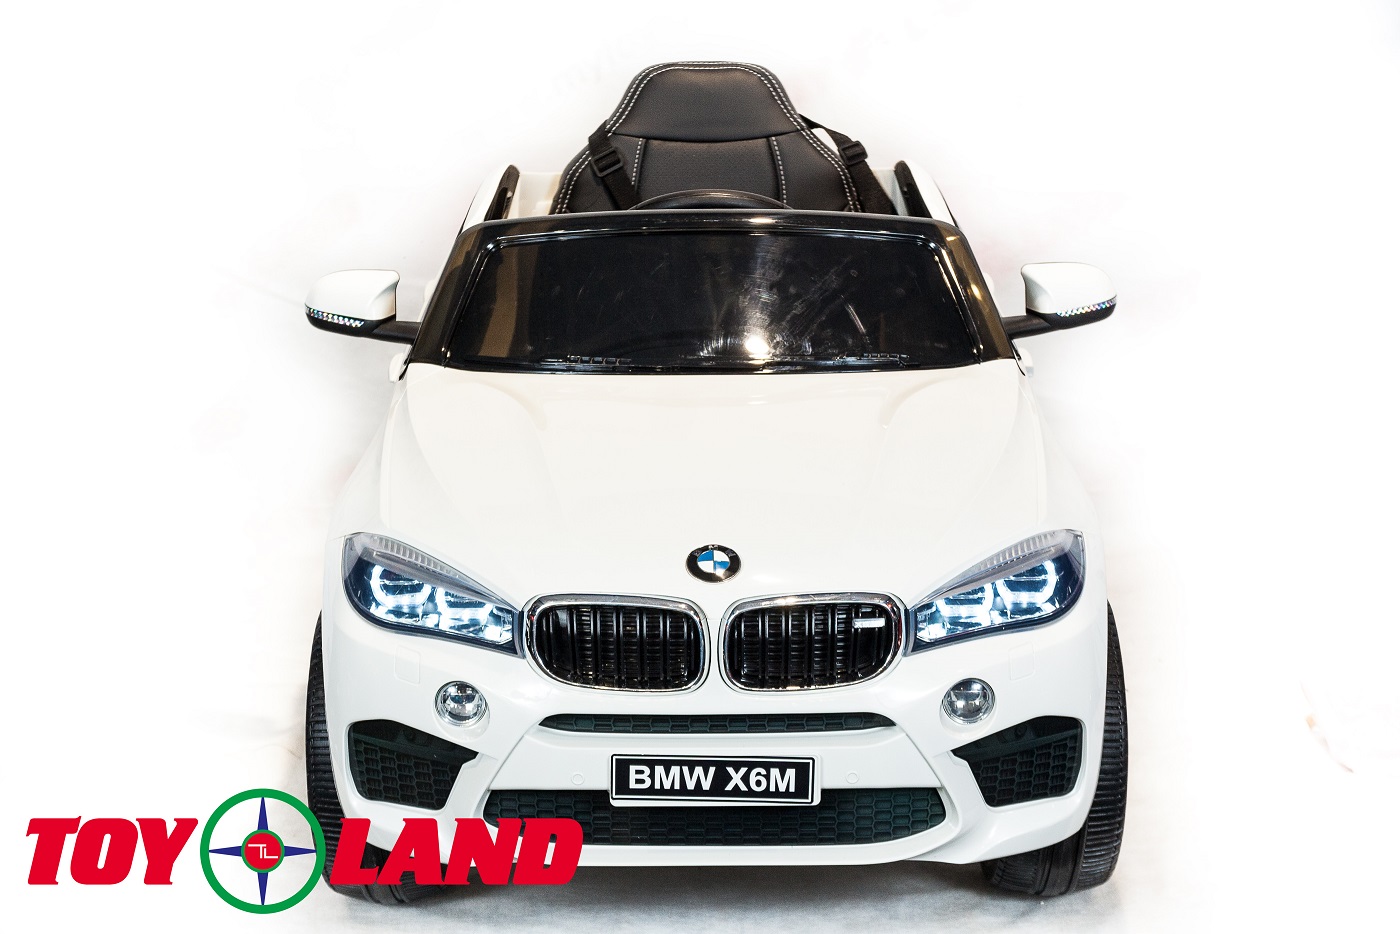 Электромобиль ToyLand BMW X6 mini белого цвета  